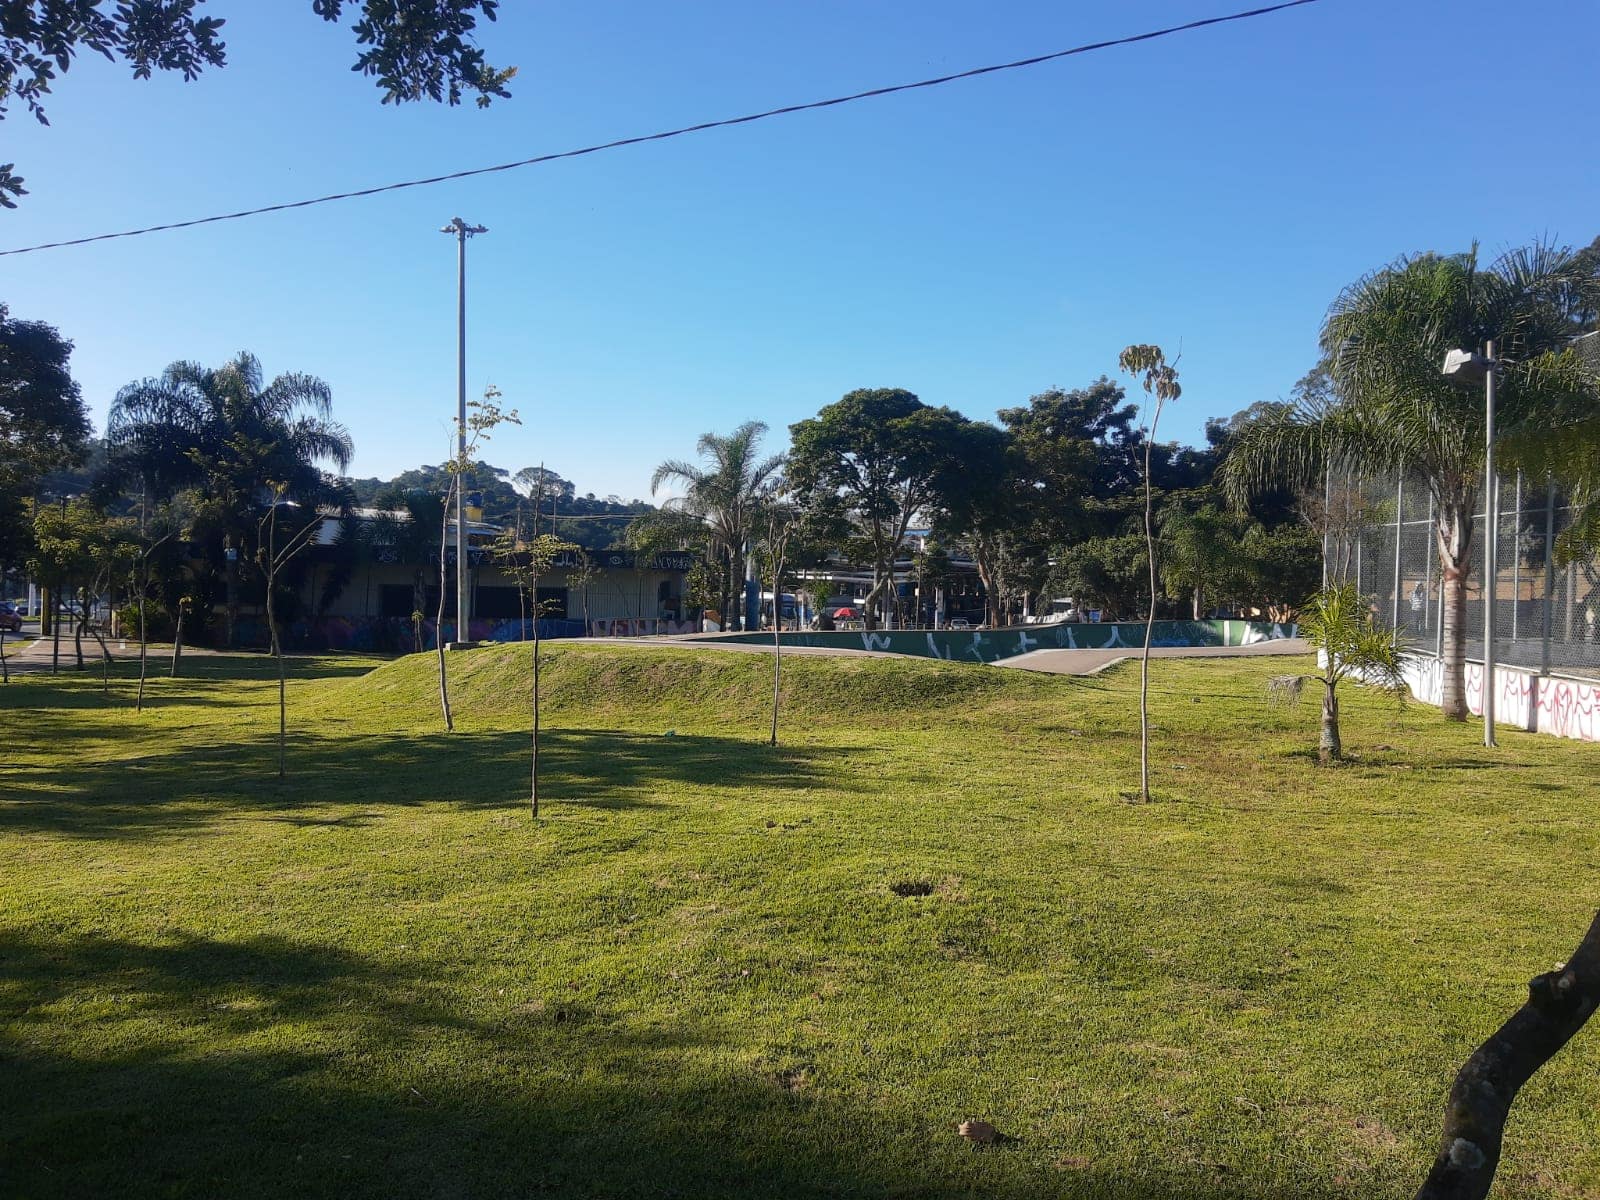 Subprefeitura remove moradores de rua e desmonta barracos em quadra de esportes invadida no Grajaú